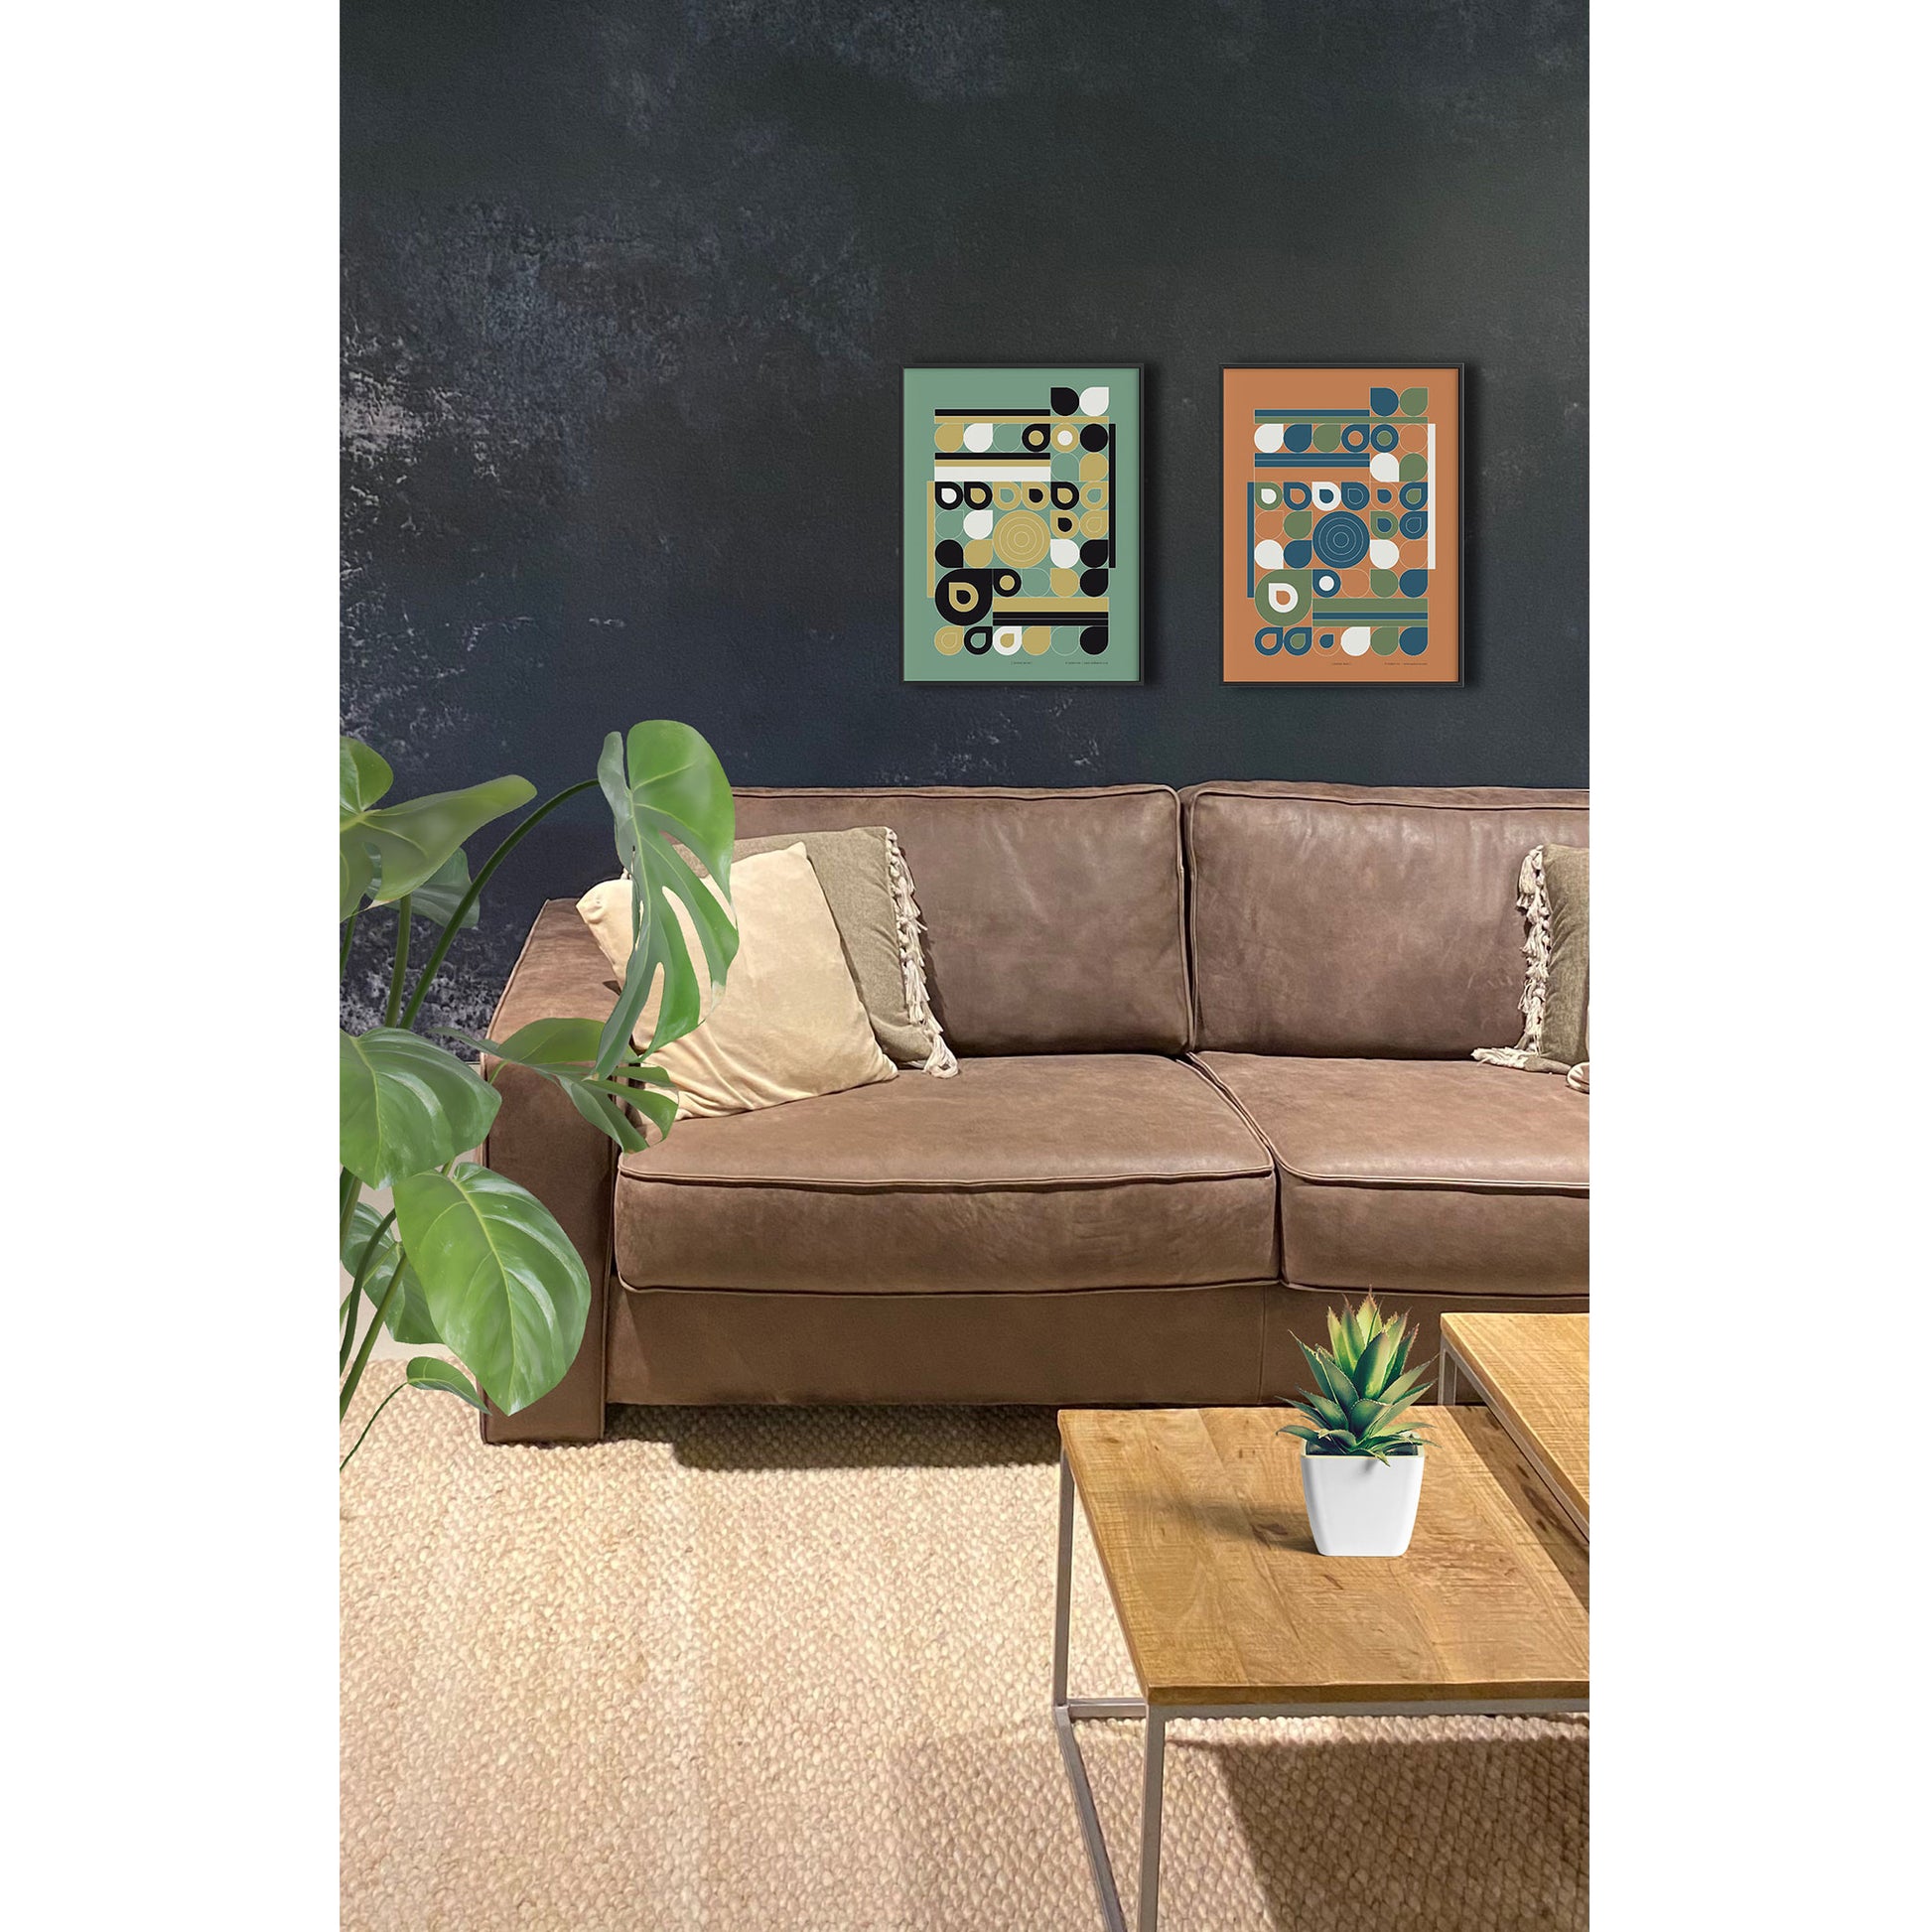 Productafbeelding poster "jardin jaune" en "jardin bleu" 5de impressie foto ingelijst, samen hangend boven een bank in een interieur